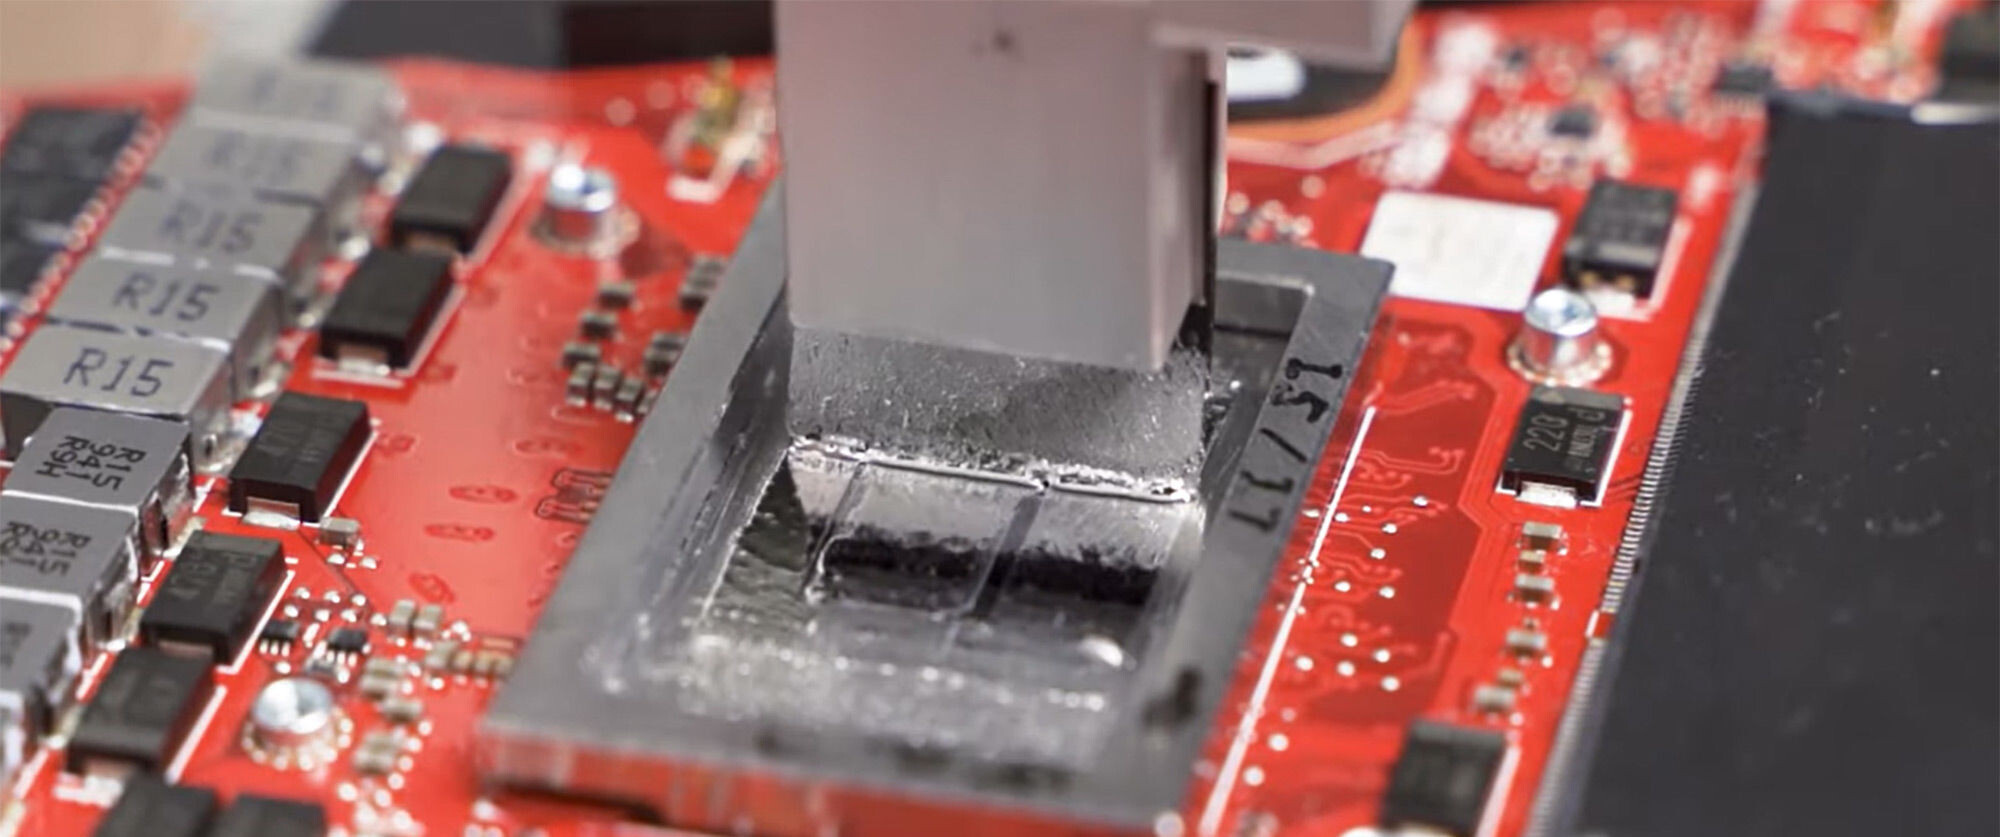 ASUS : du métal liquide à la place de la pâte thermique dans les nouveaux portables ROG